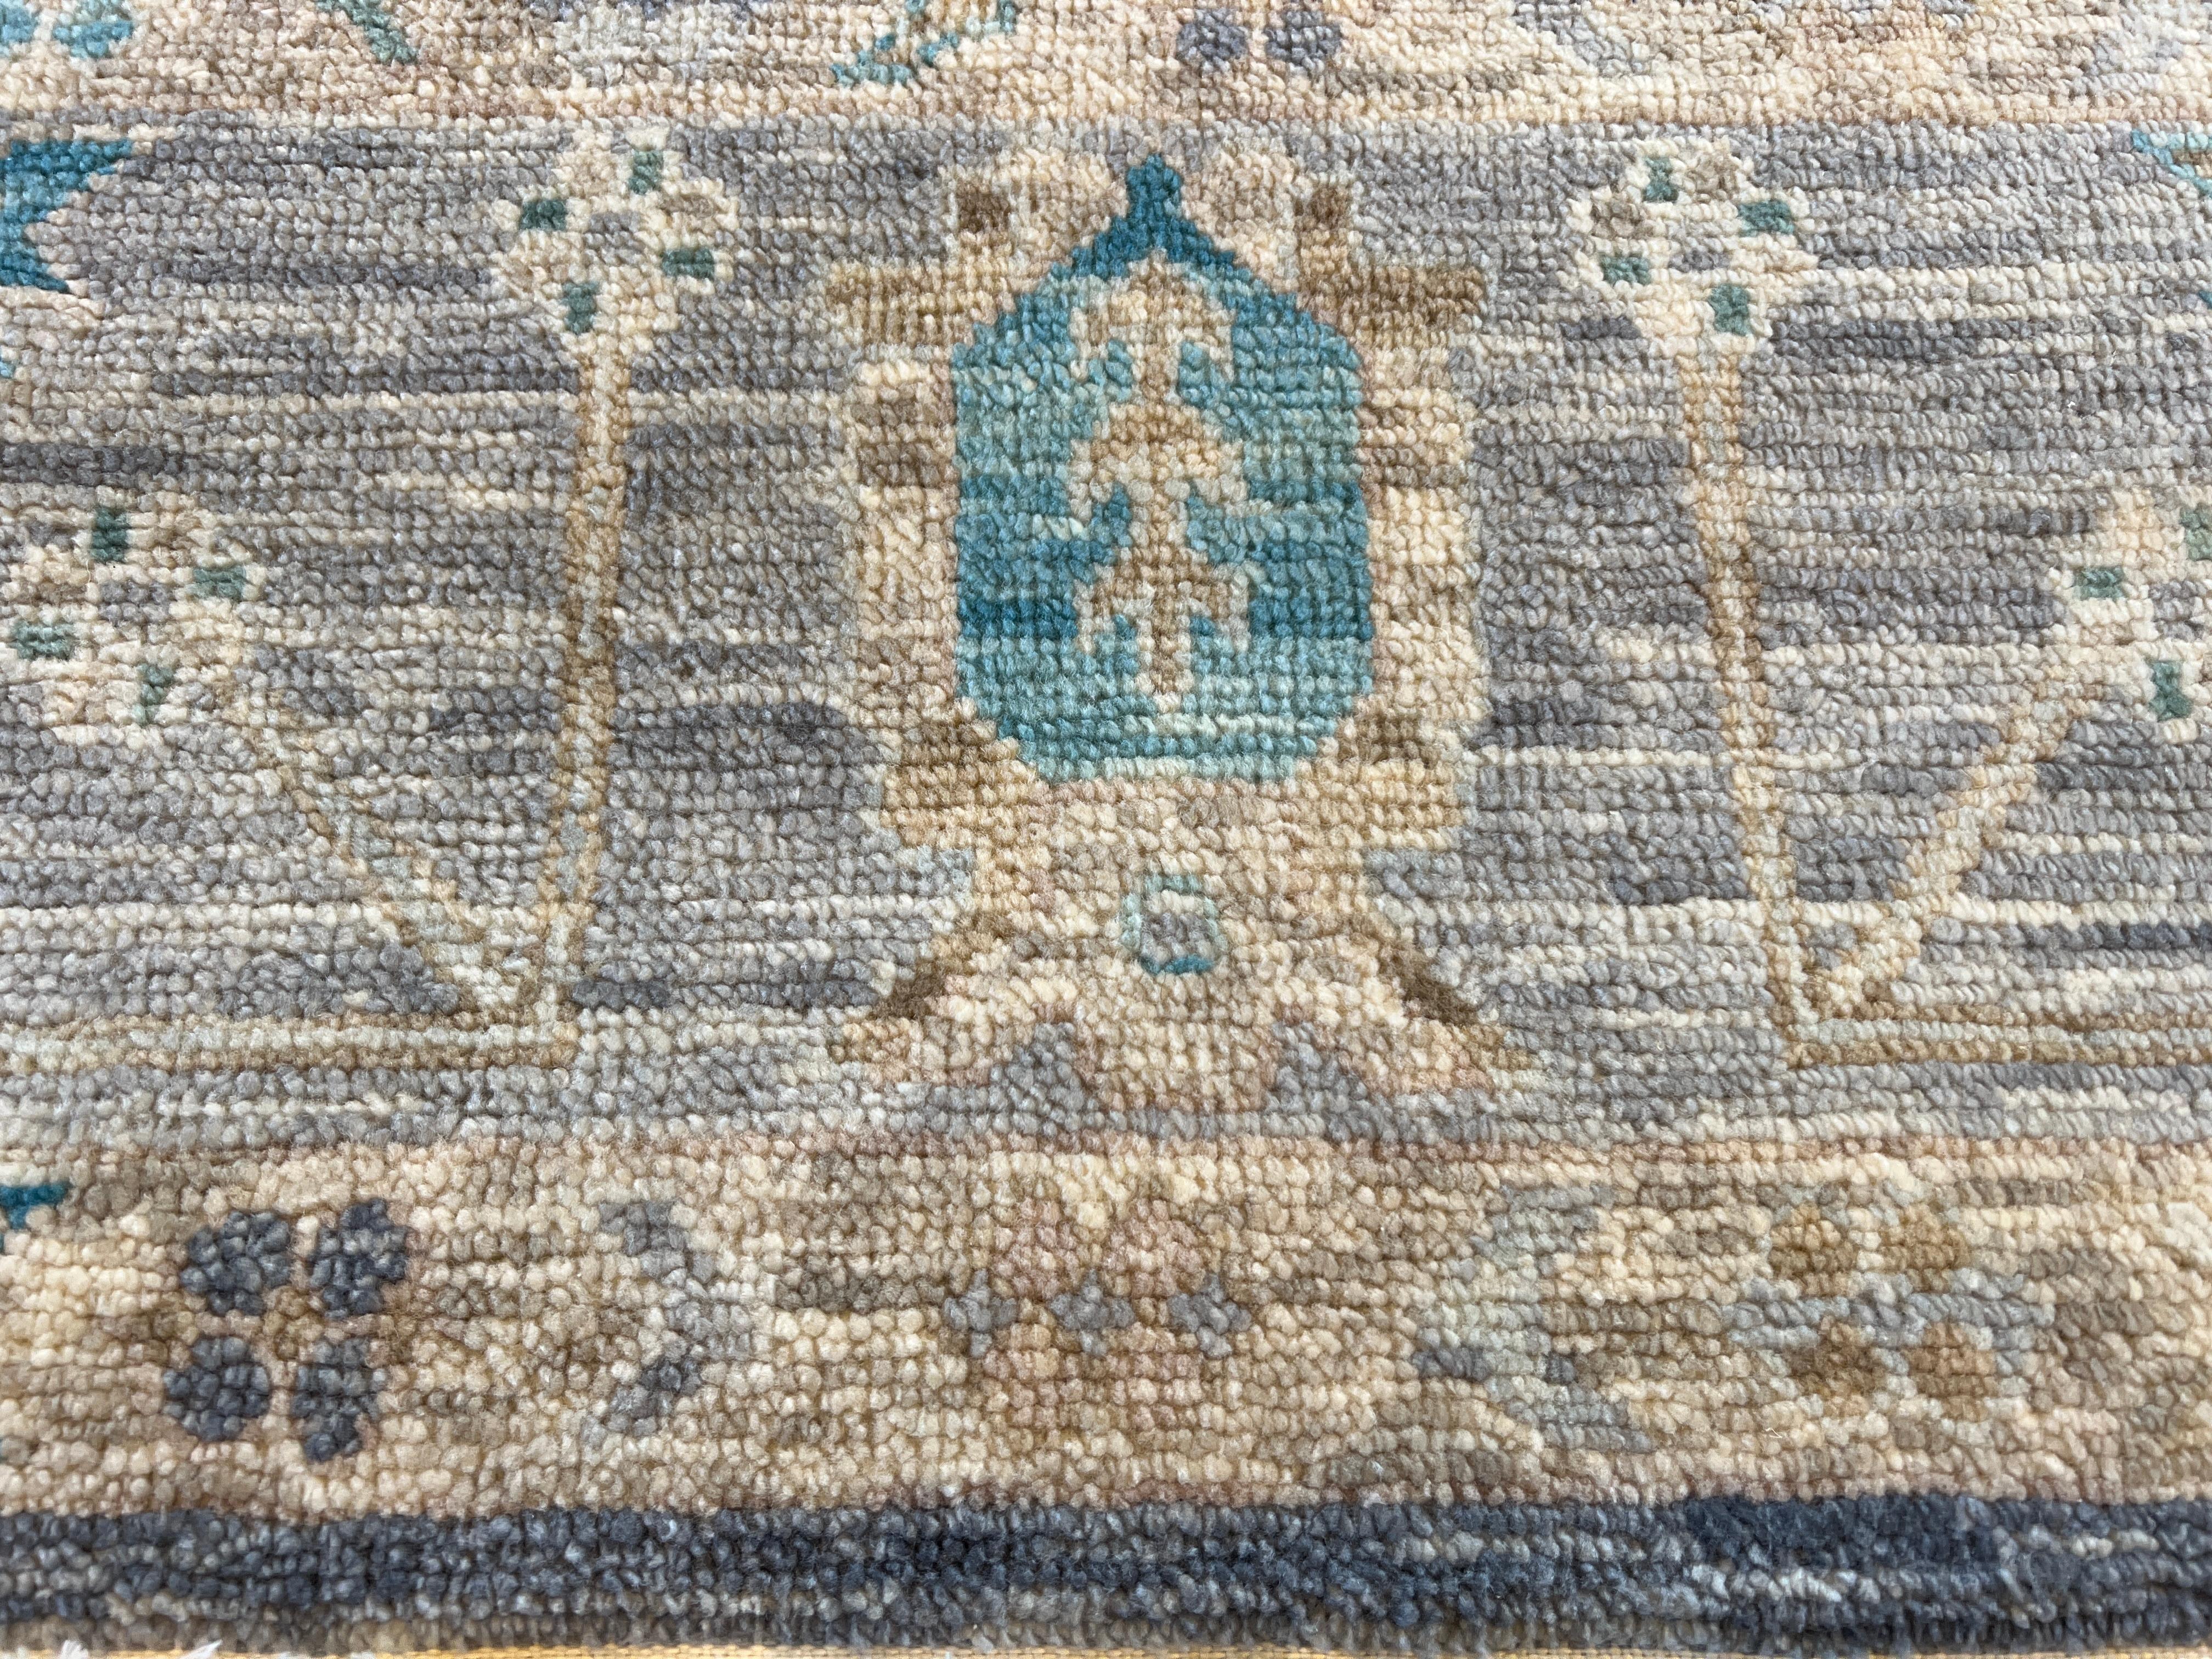 Élevez votre espace avec notre tapis 9'x12' de design persan gris ivoire entièrement en laine noué à la main en Inde. Doté d'un superbe design de transition, ce tapis ajoute du style et un confort luxueux à n'importe quelle pièce. Fabriqué en laine